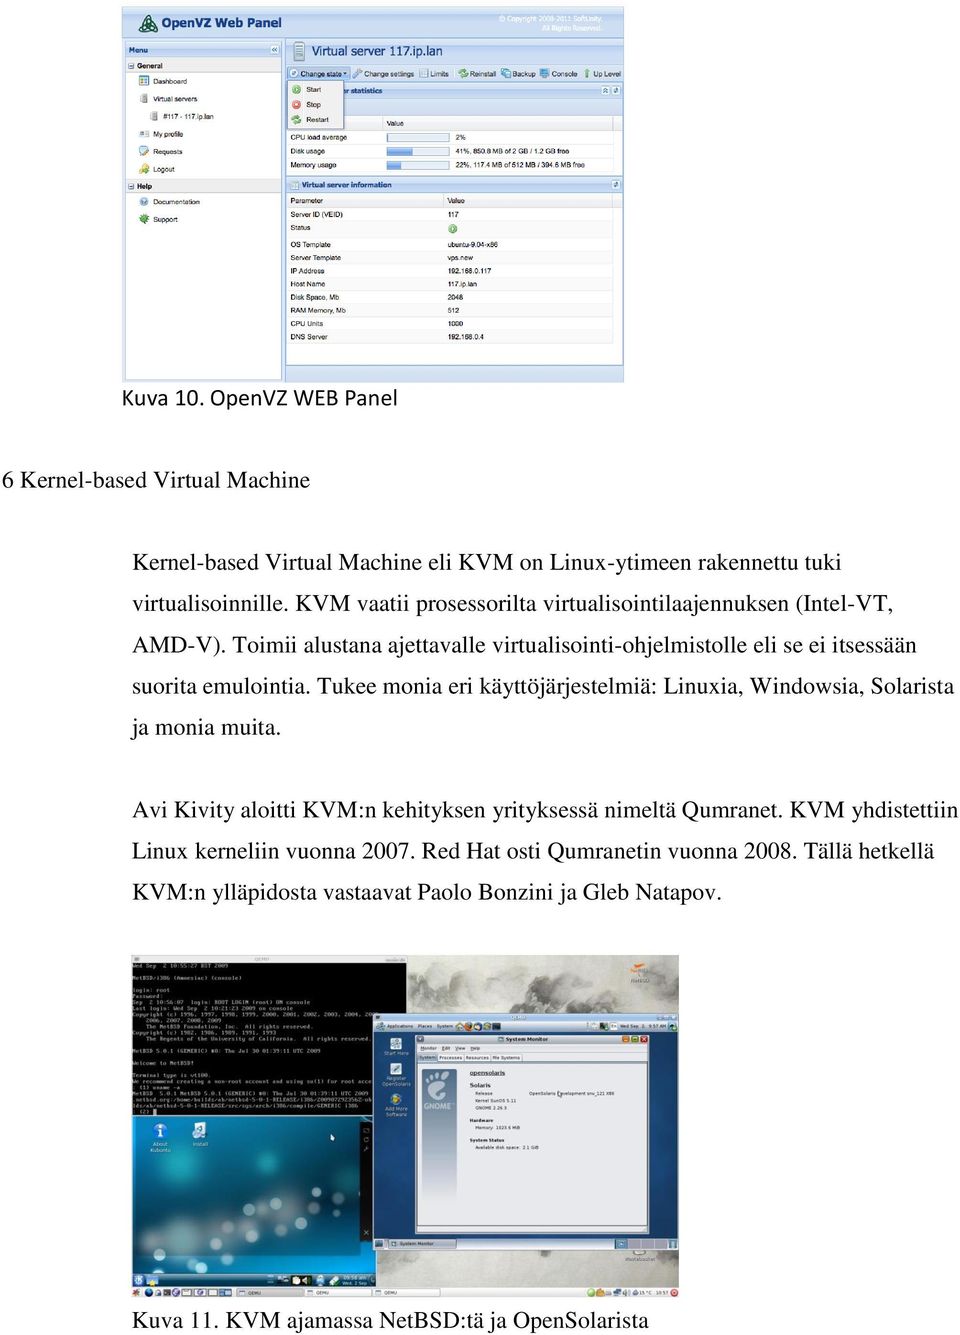 Tukee monia eri käyttöjärjestelmiä: Linuxia, Windowsia, Solarista ja monia muita. Avi Kivity aloitti KVM:n kehityksen yrityksessä nimeltä Qumranet.